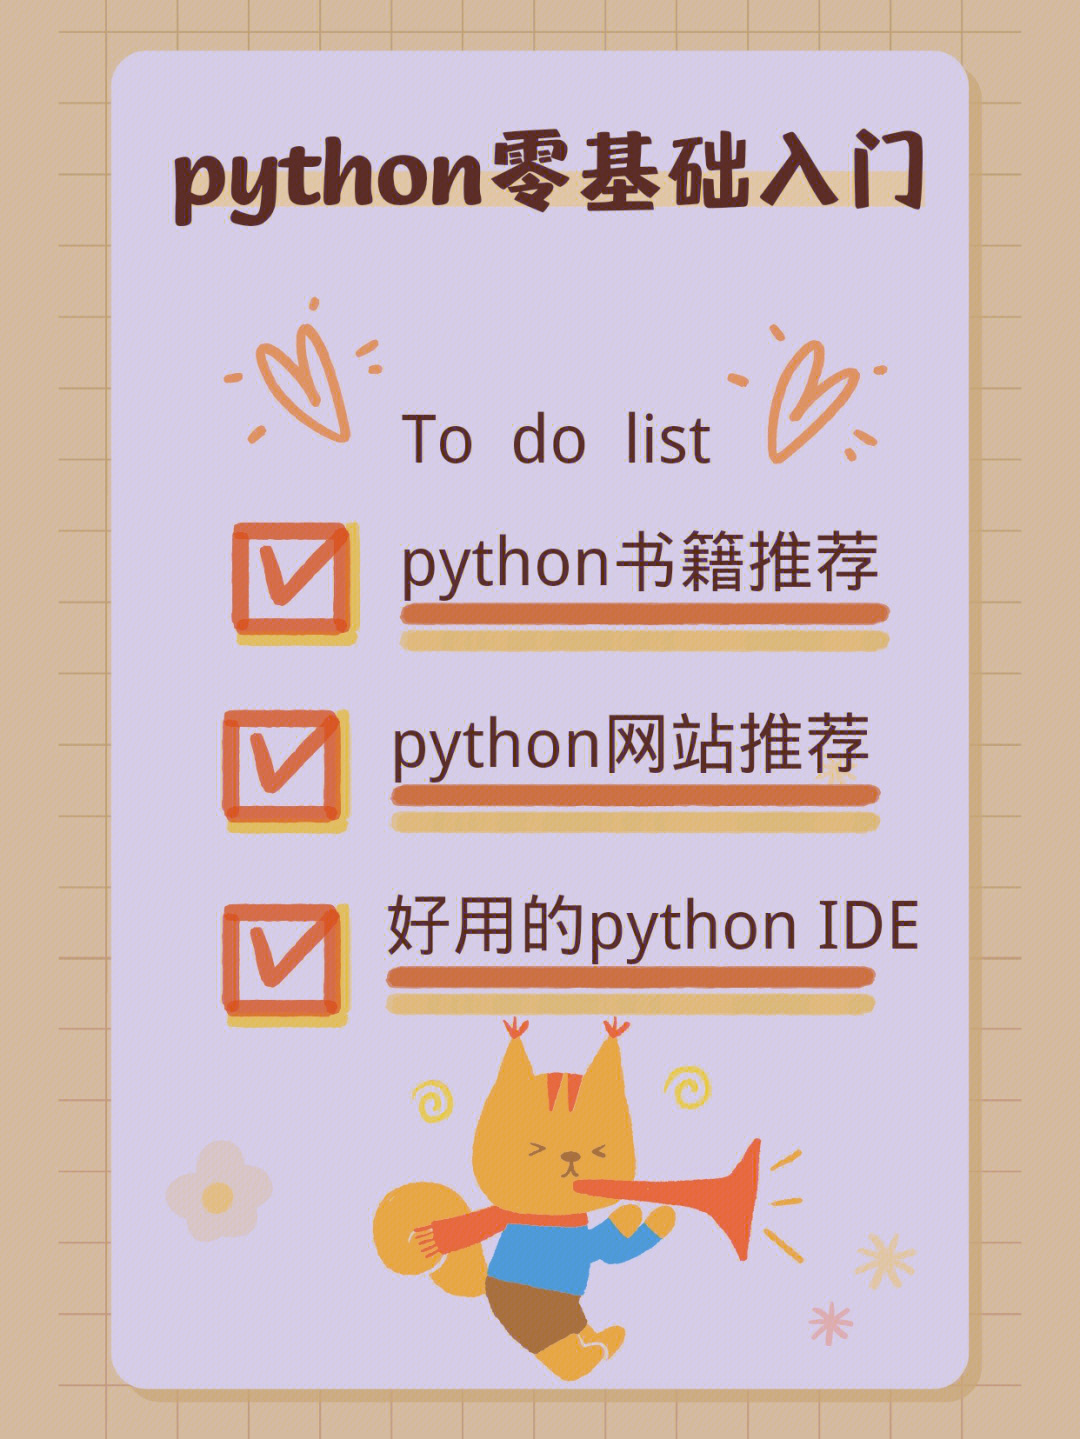 学习网站和好用的python ide92python 入门到进阶 11 本书籍(pdf